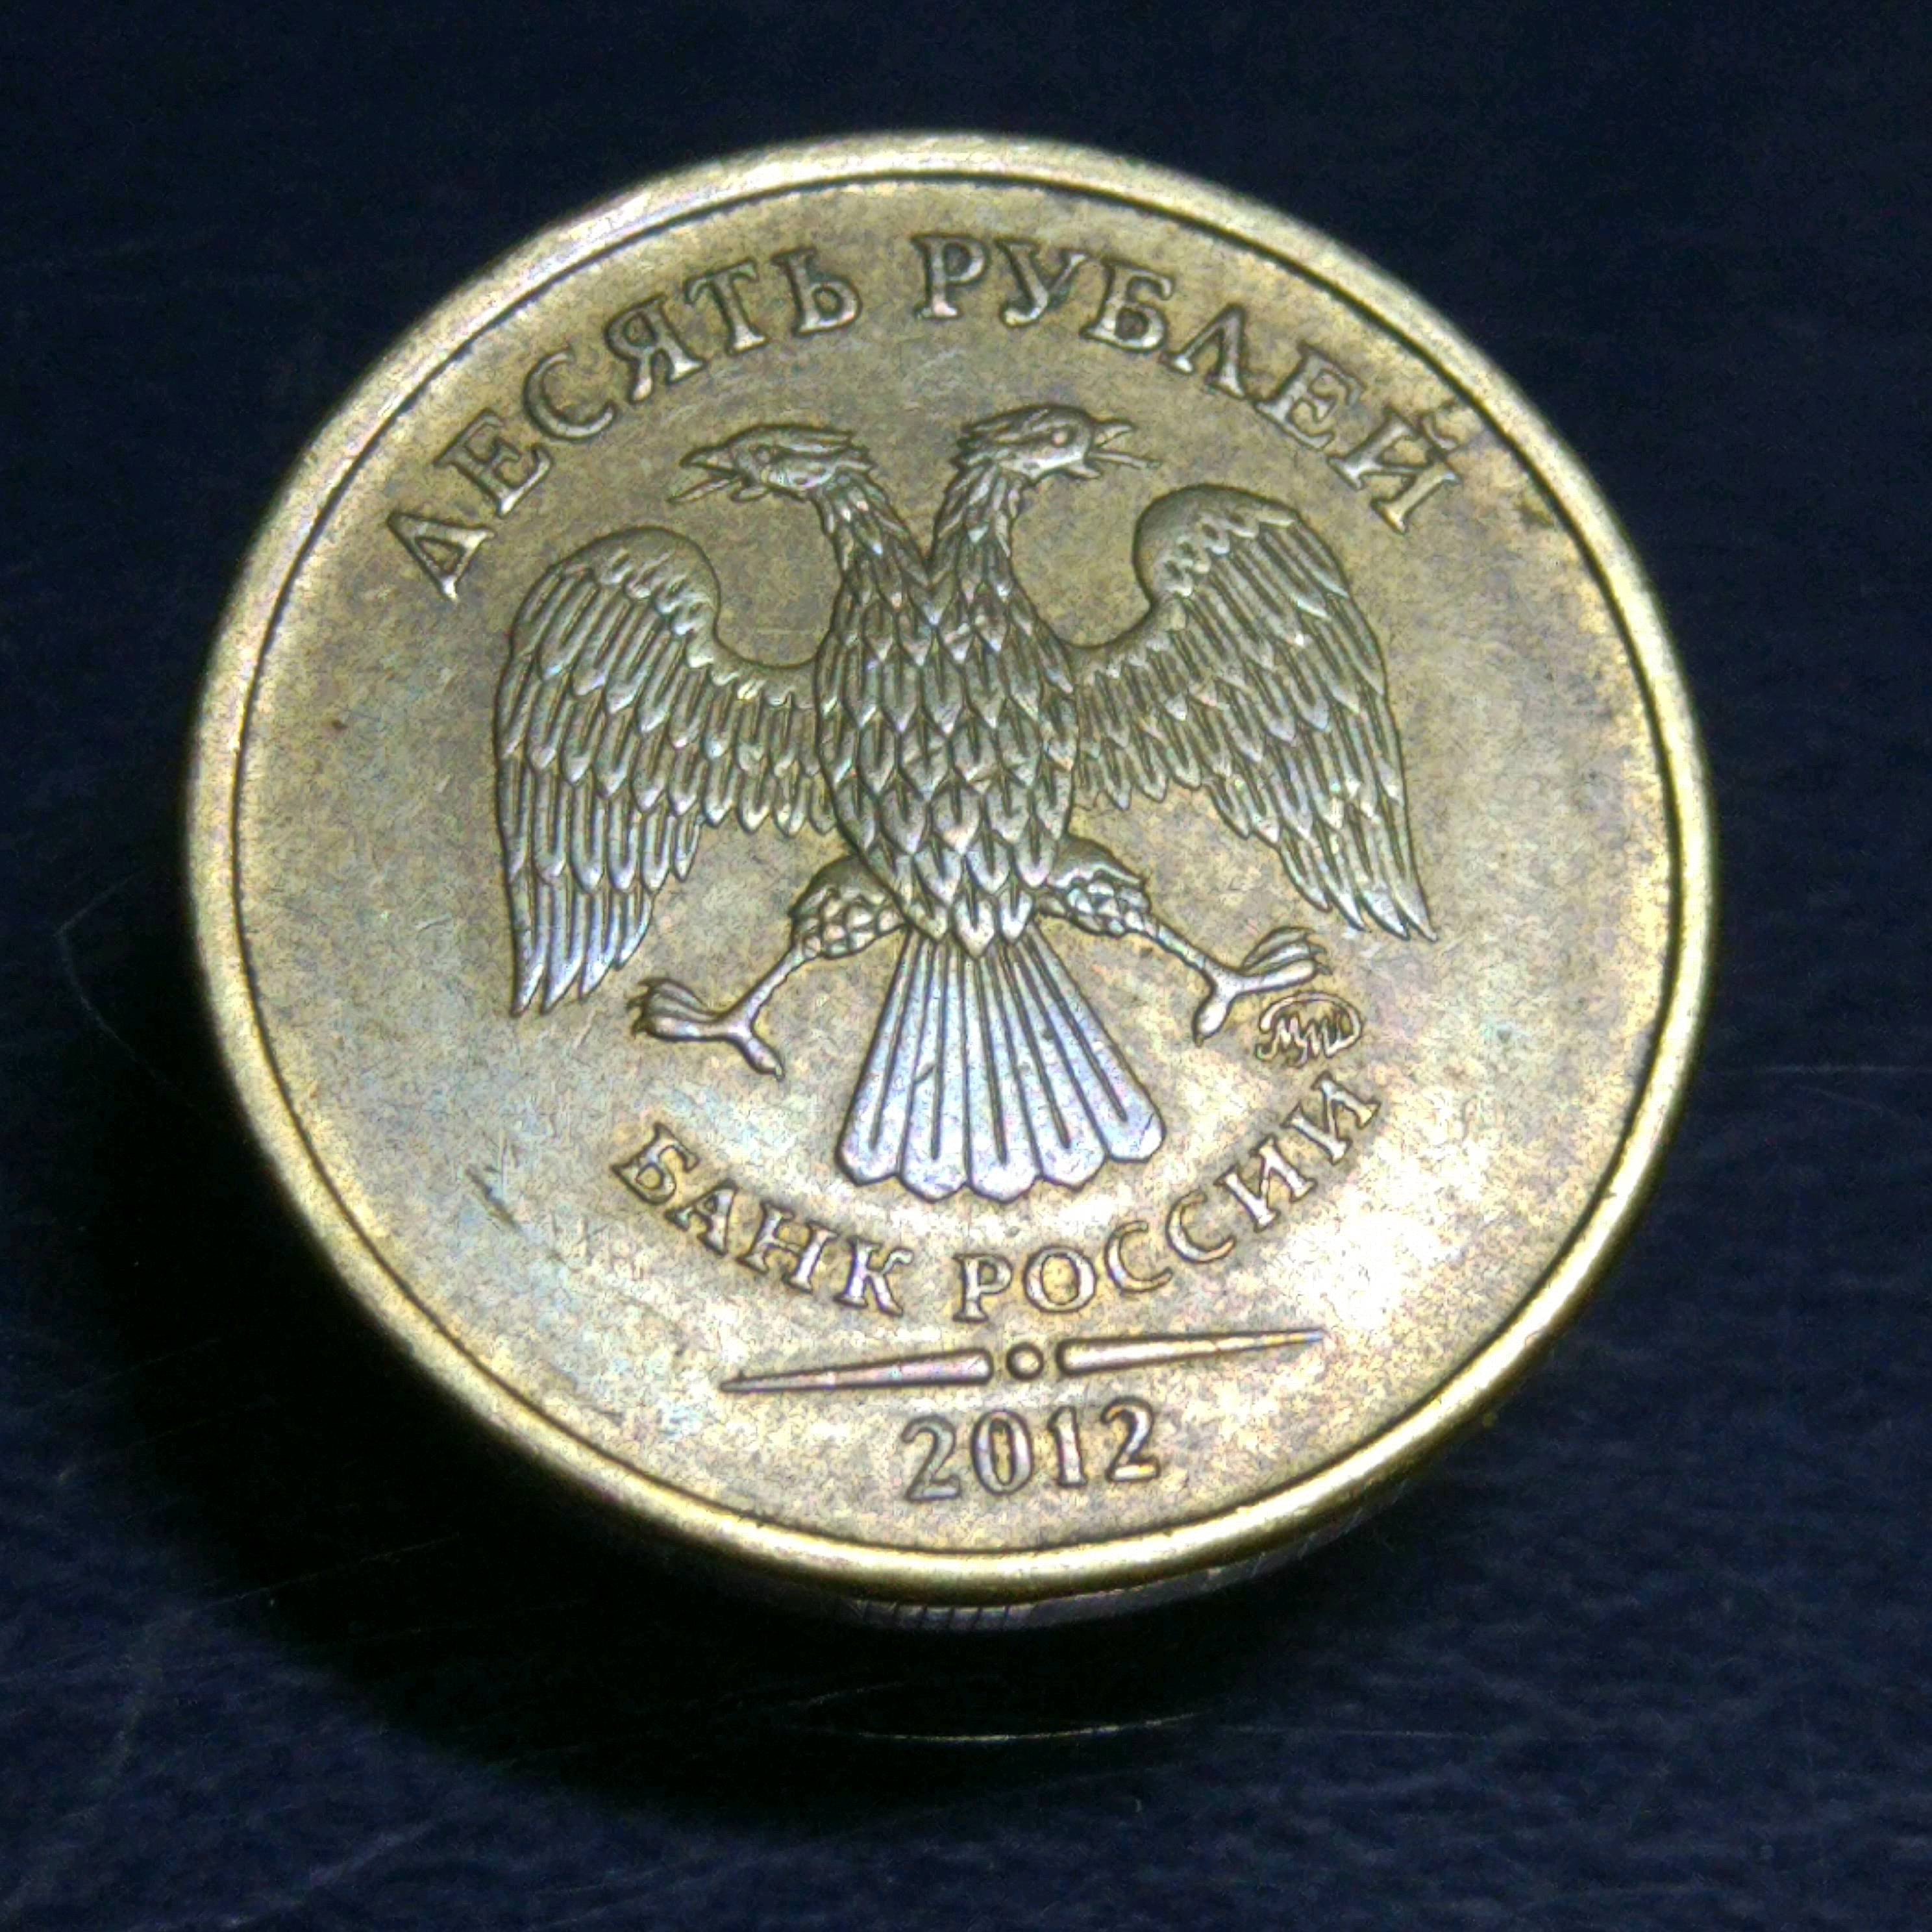 0元起拍,俄罗斯10卢布硬币1枚多年收藏,实物拍